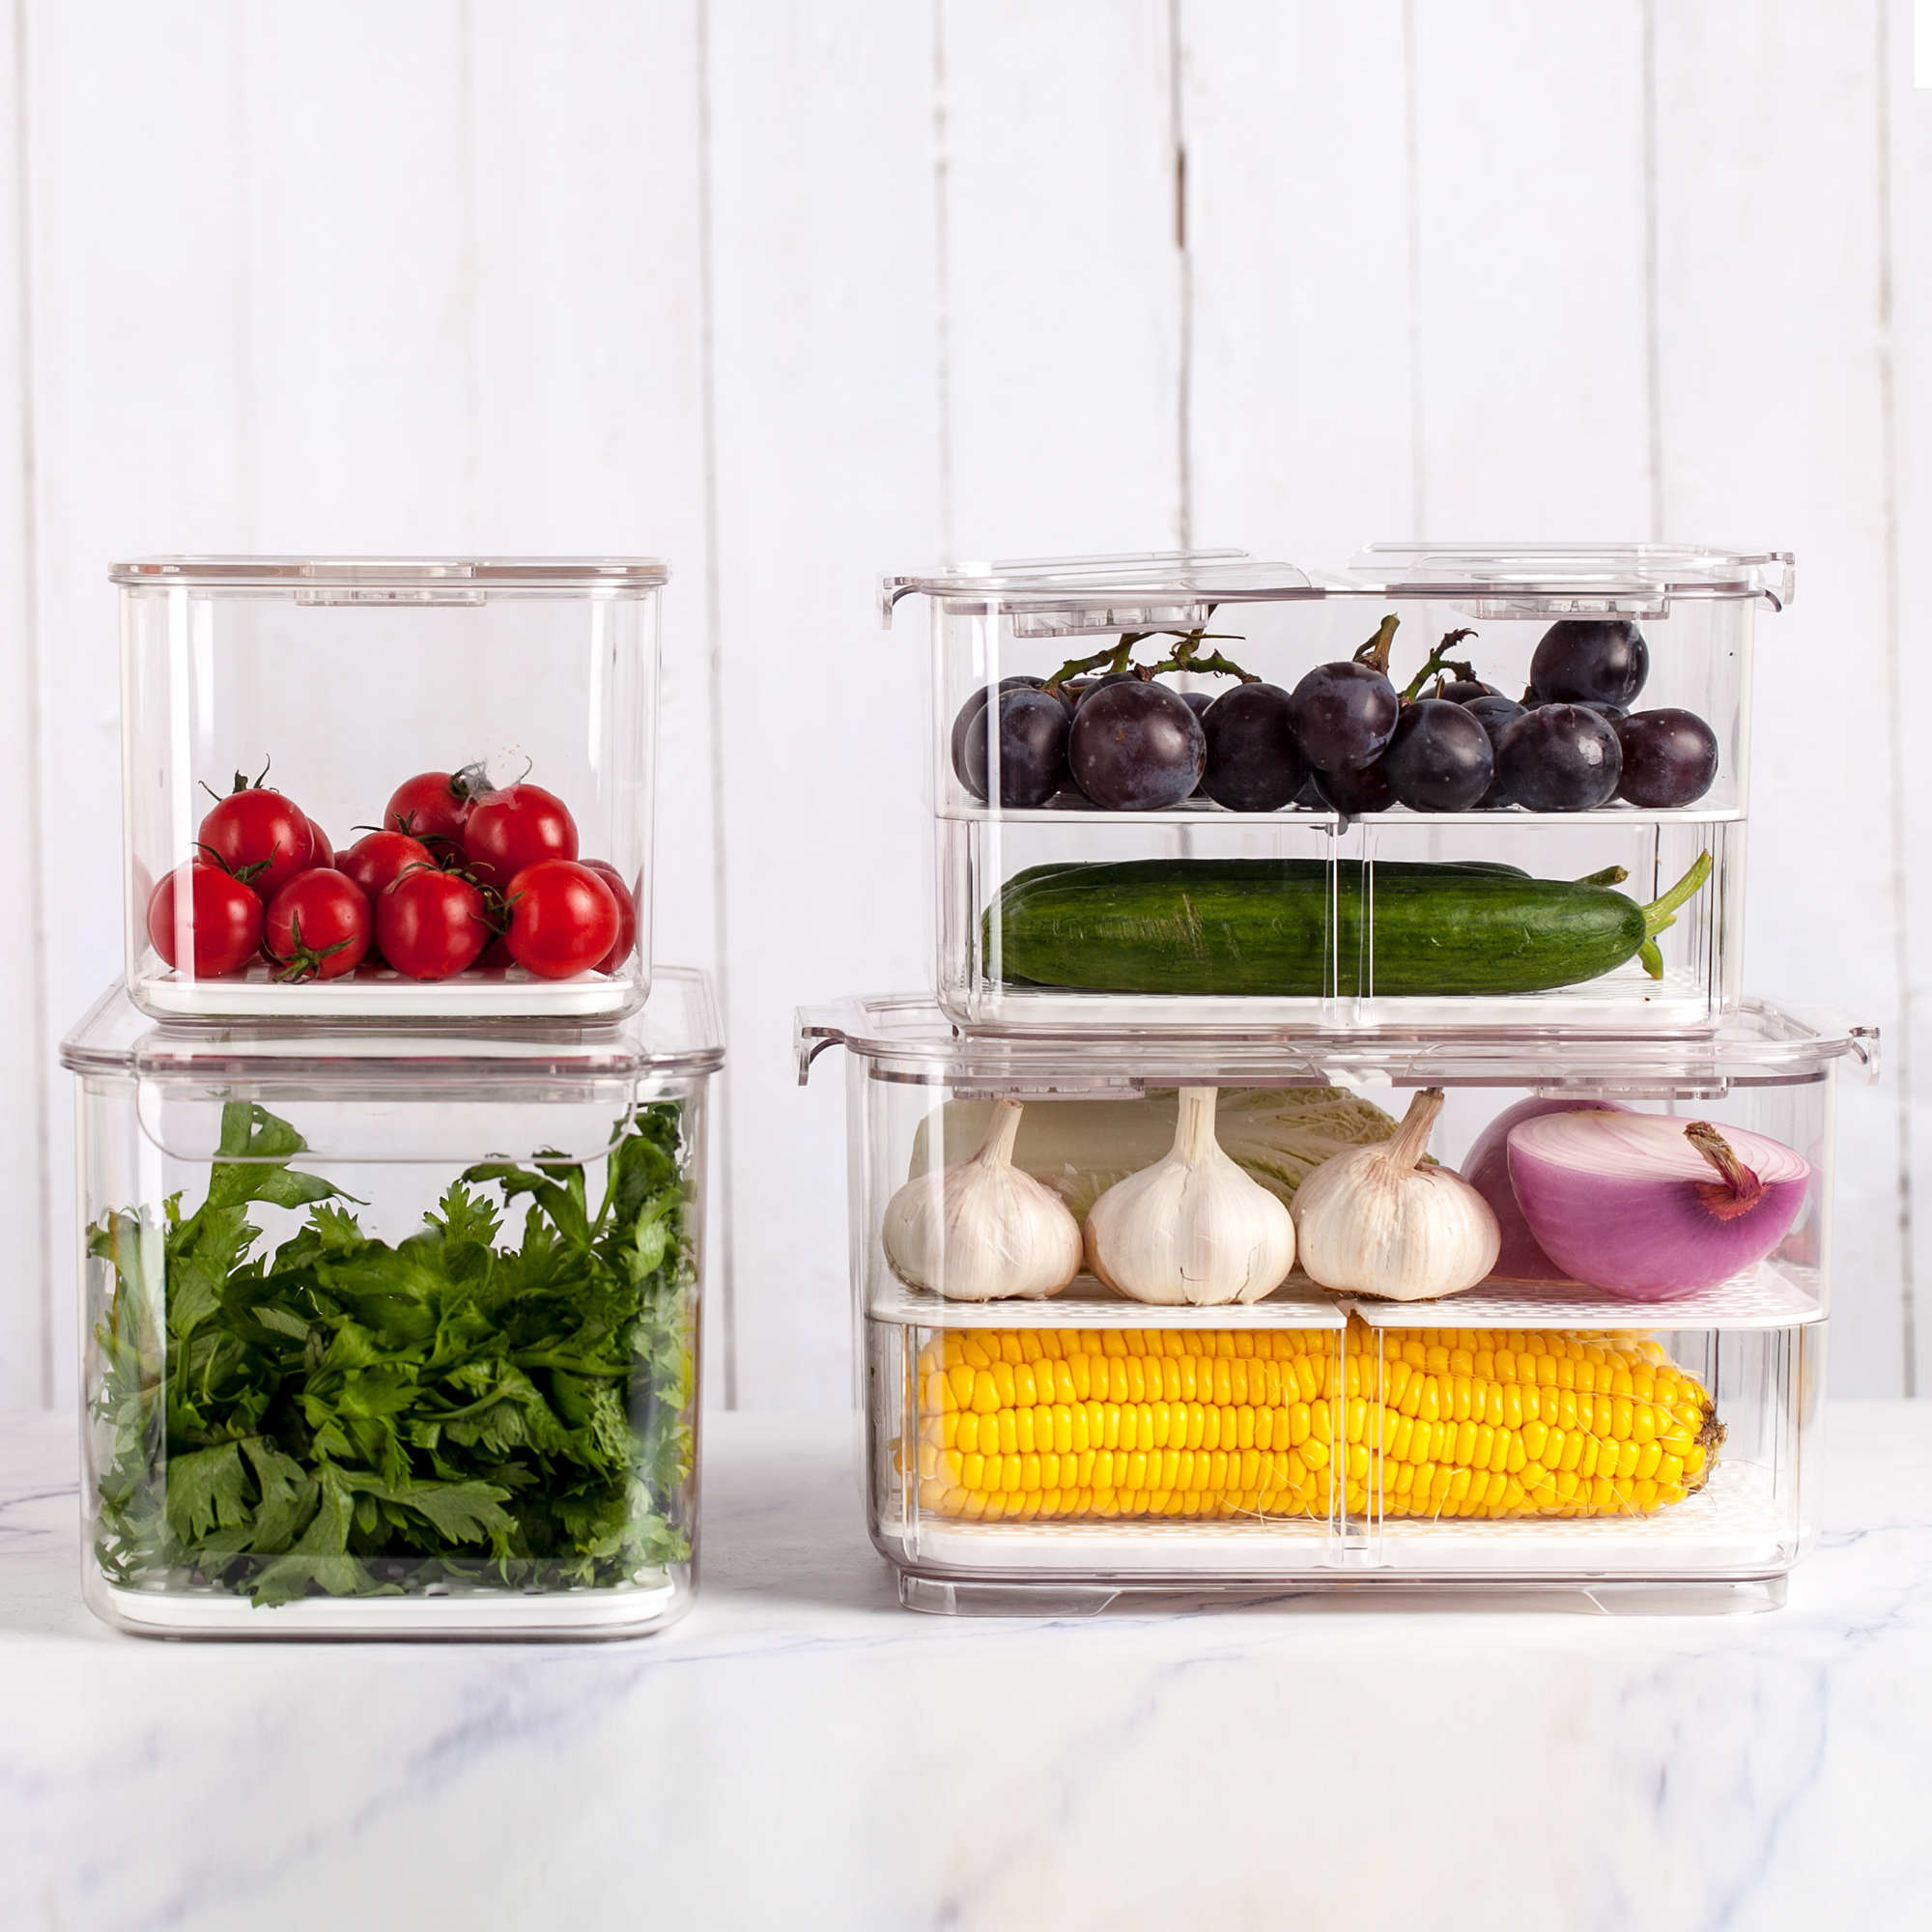 Kühlschrank organisieren & Lebensmittel richtig lagern